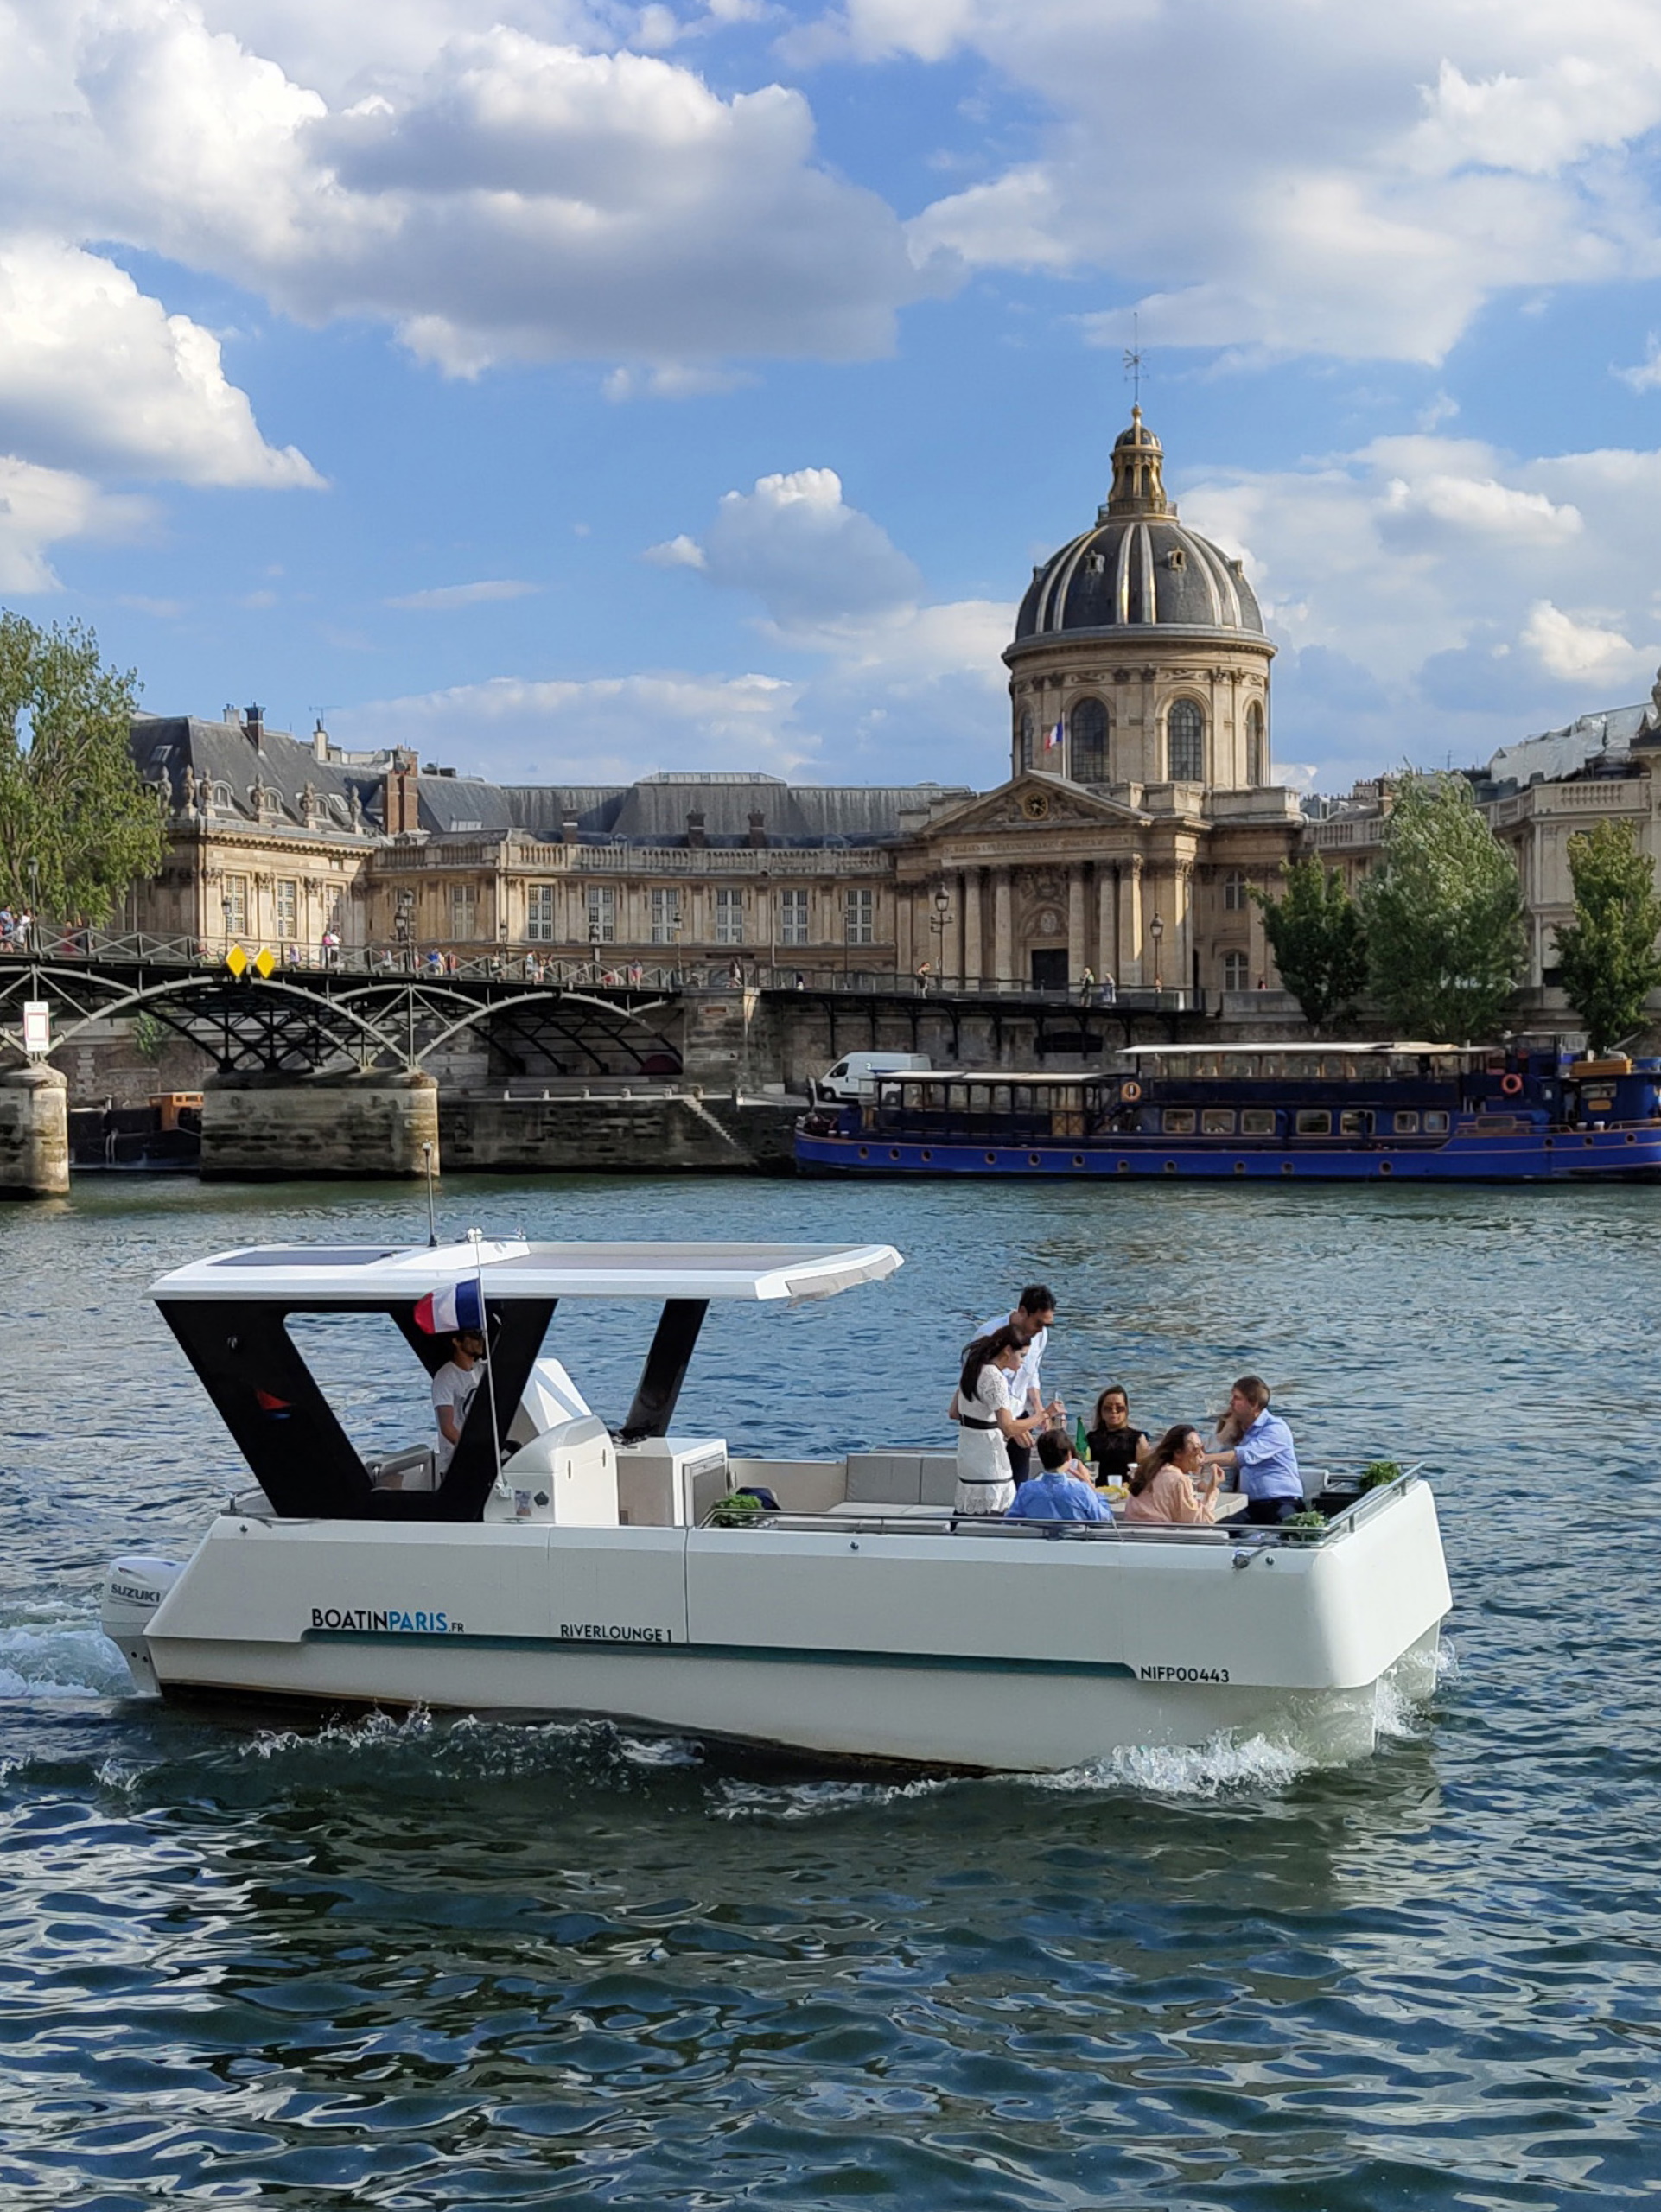 Boat in Paris - Private boat tour in Paris on the Seine - Pont des Arts - Portrait